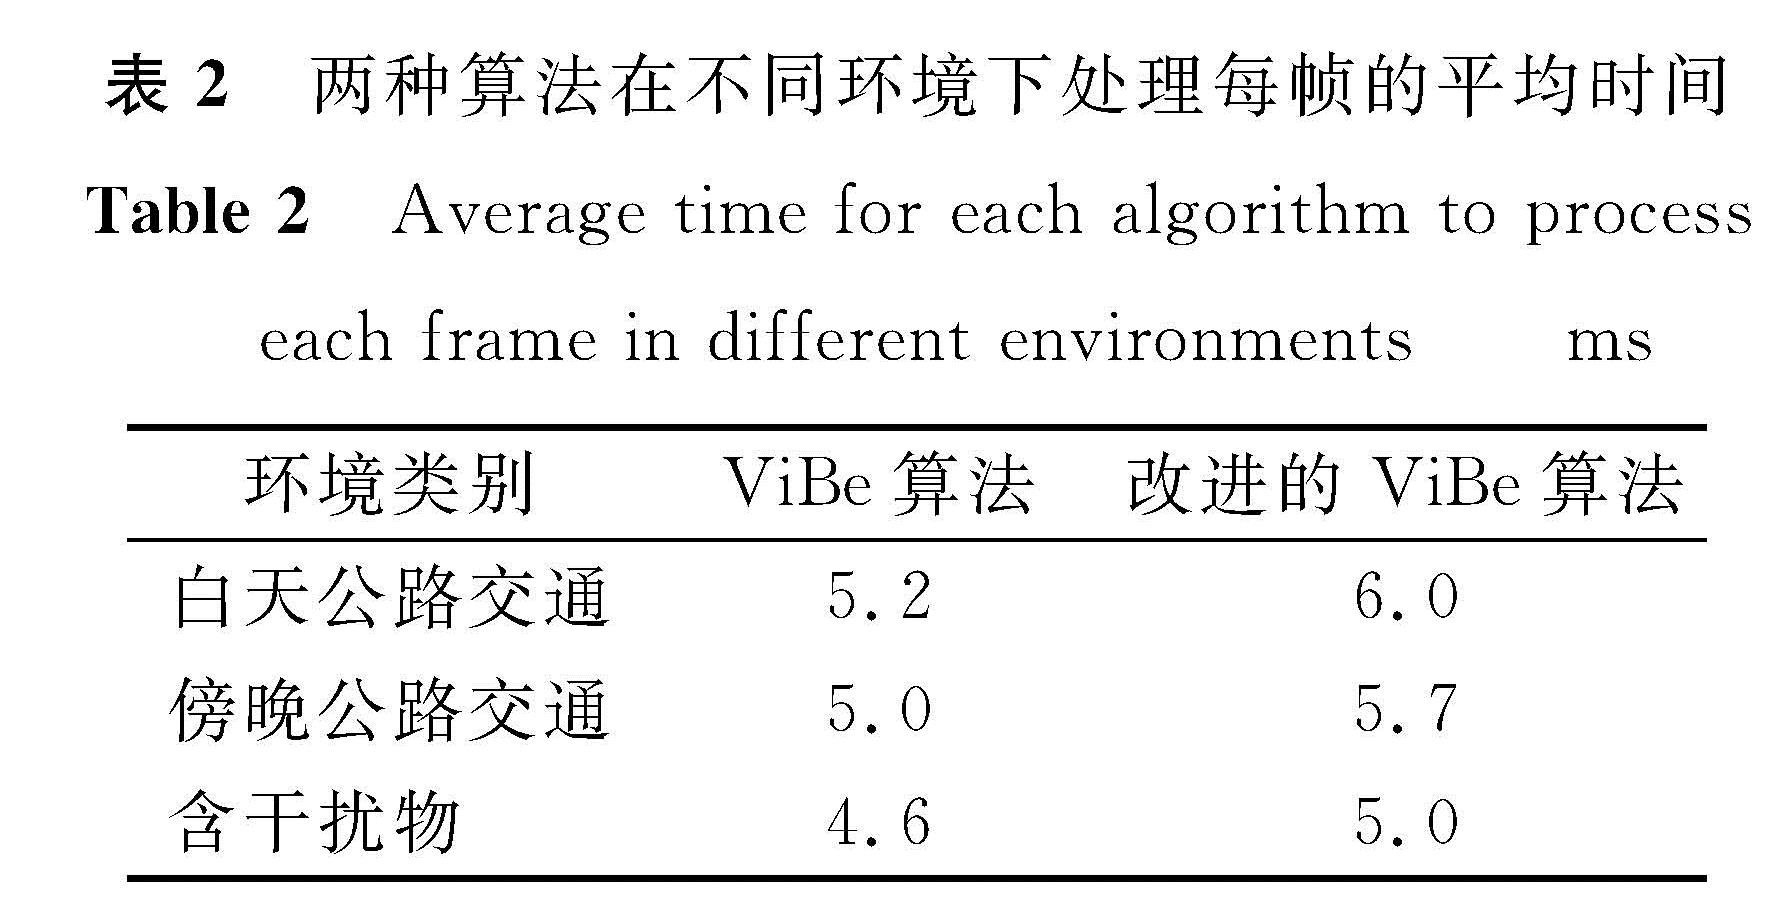 表2 两种算法在不同环境下处理每帧的平均时间<br/>Table 2 Average time for each algorithm to process each frame in different environments ms